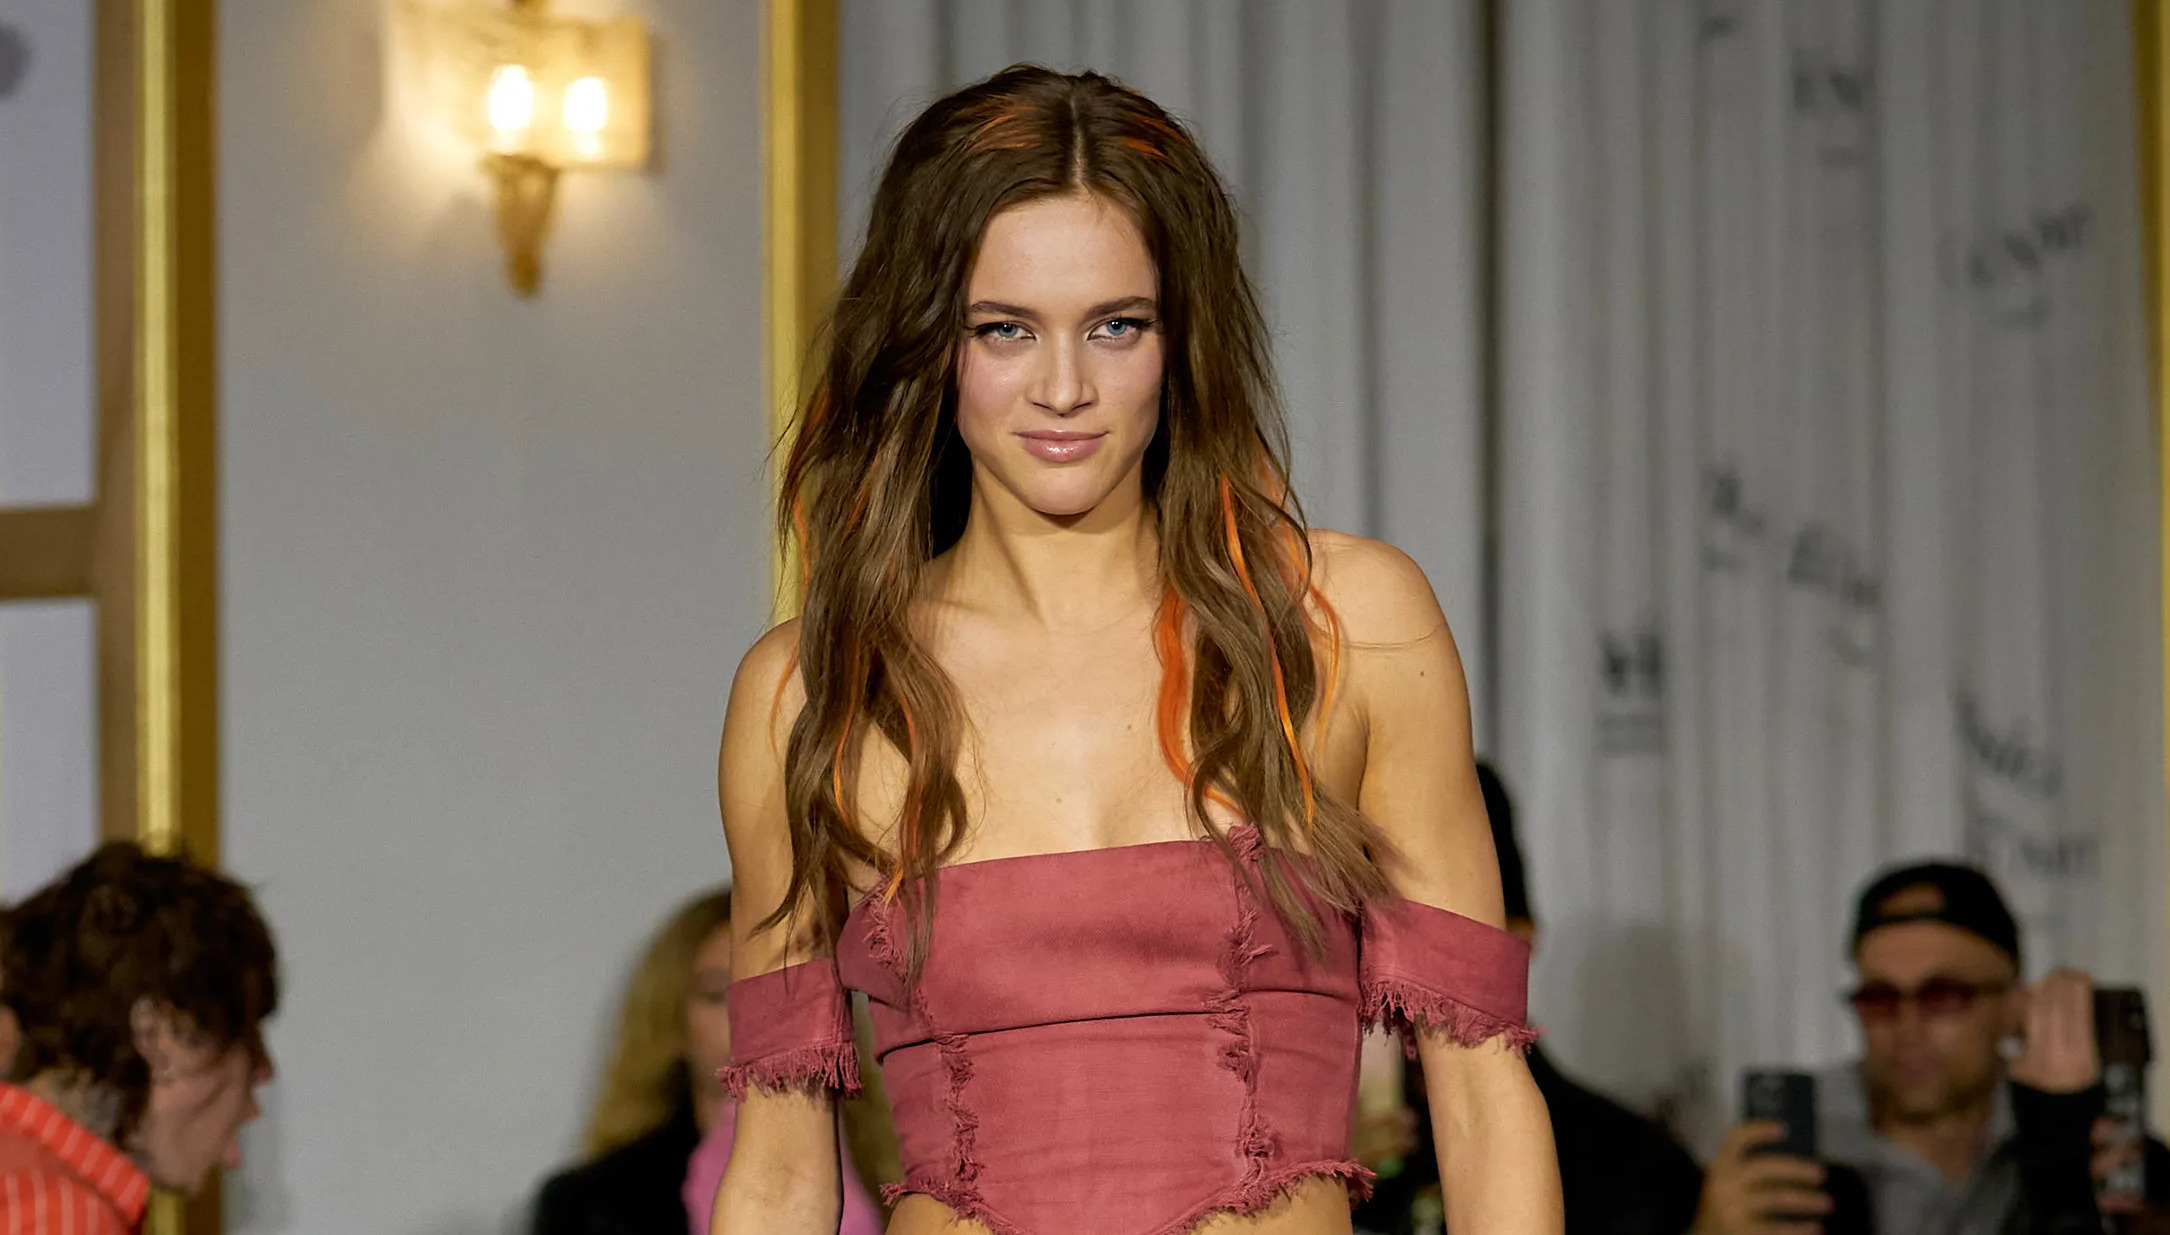 El look de mantel es el más viral de la Semana de la Moda en Copenhague